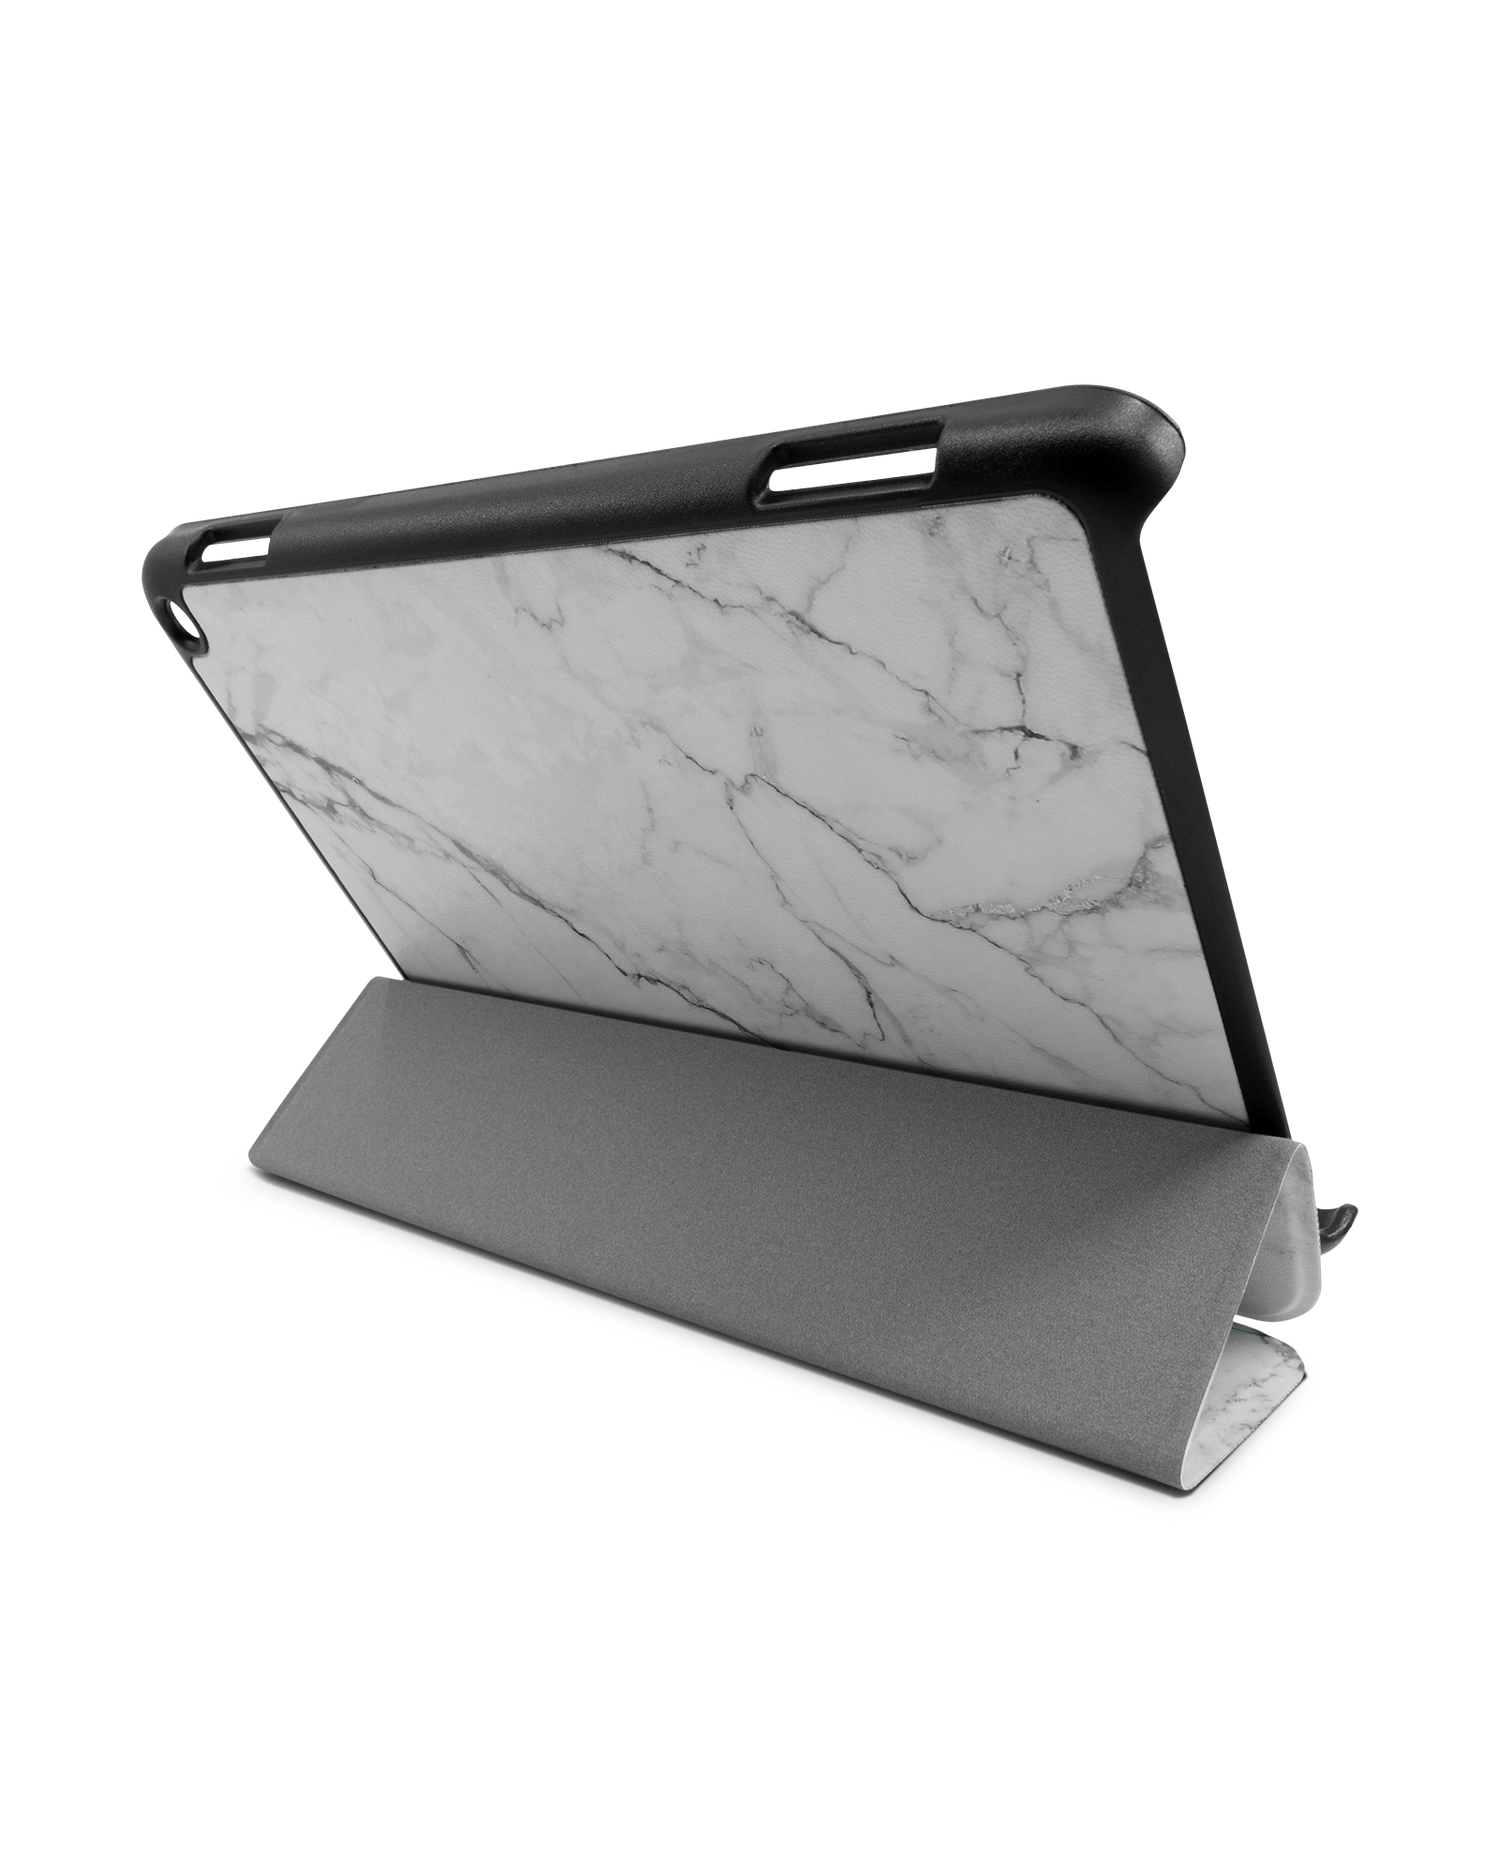 White Marble Tablet Smart Case für Amazon Fire HD 8 (2022), Amazon Fire HD 8 Plus (2022), Amazon Fire HD 8 (2020), Amazon Fire HD 8 Plus (2020): Aufgestellt im Querformat